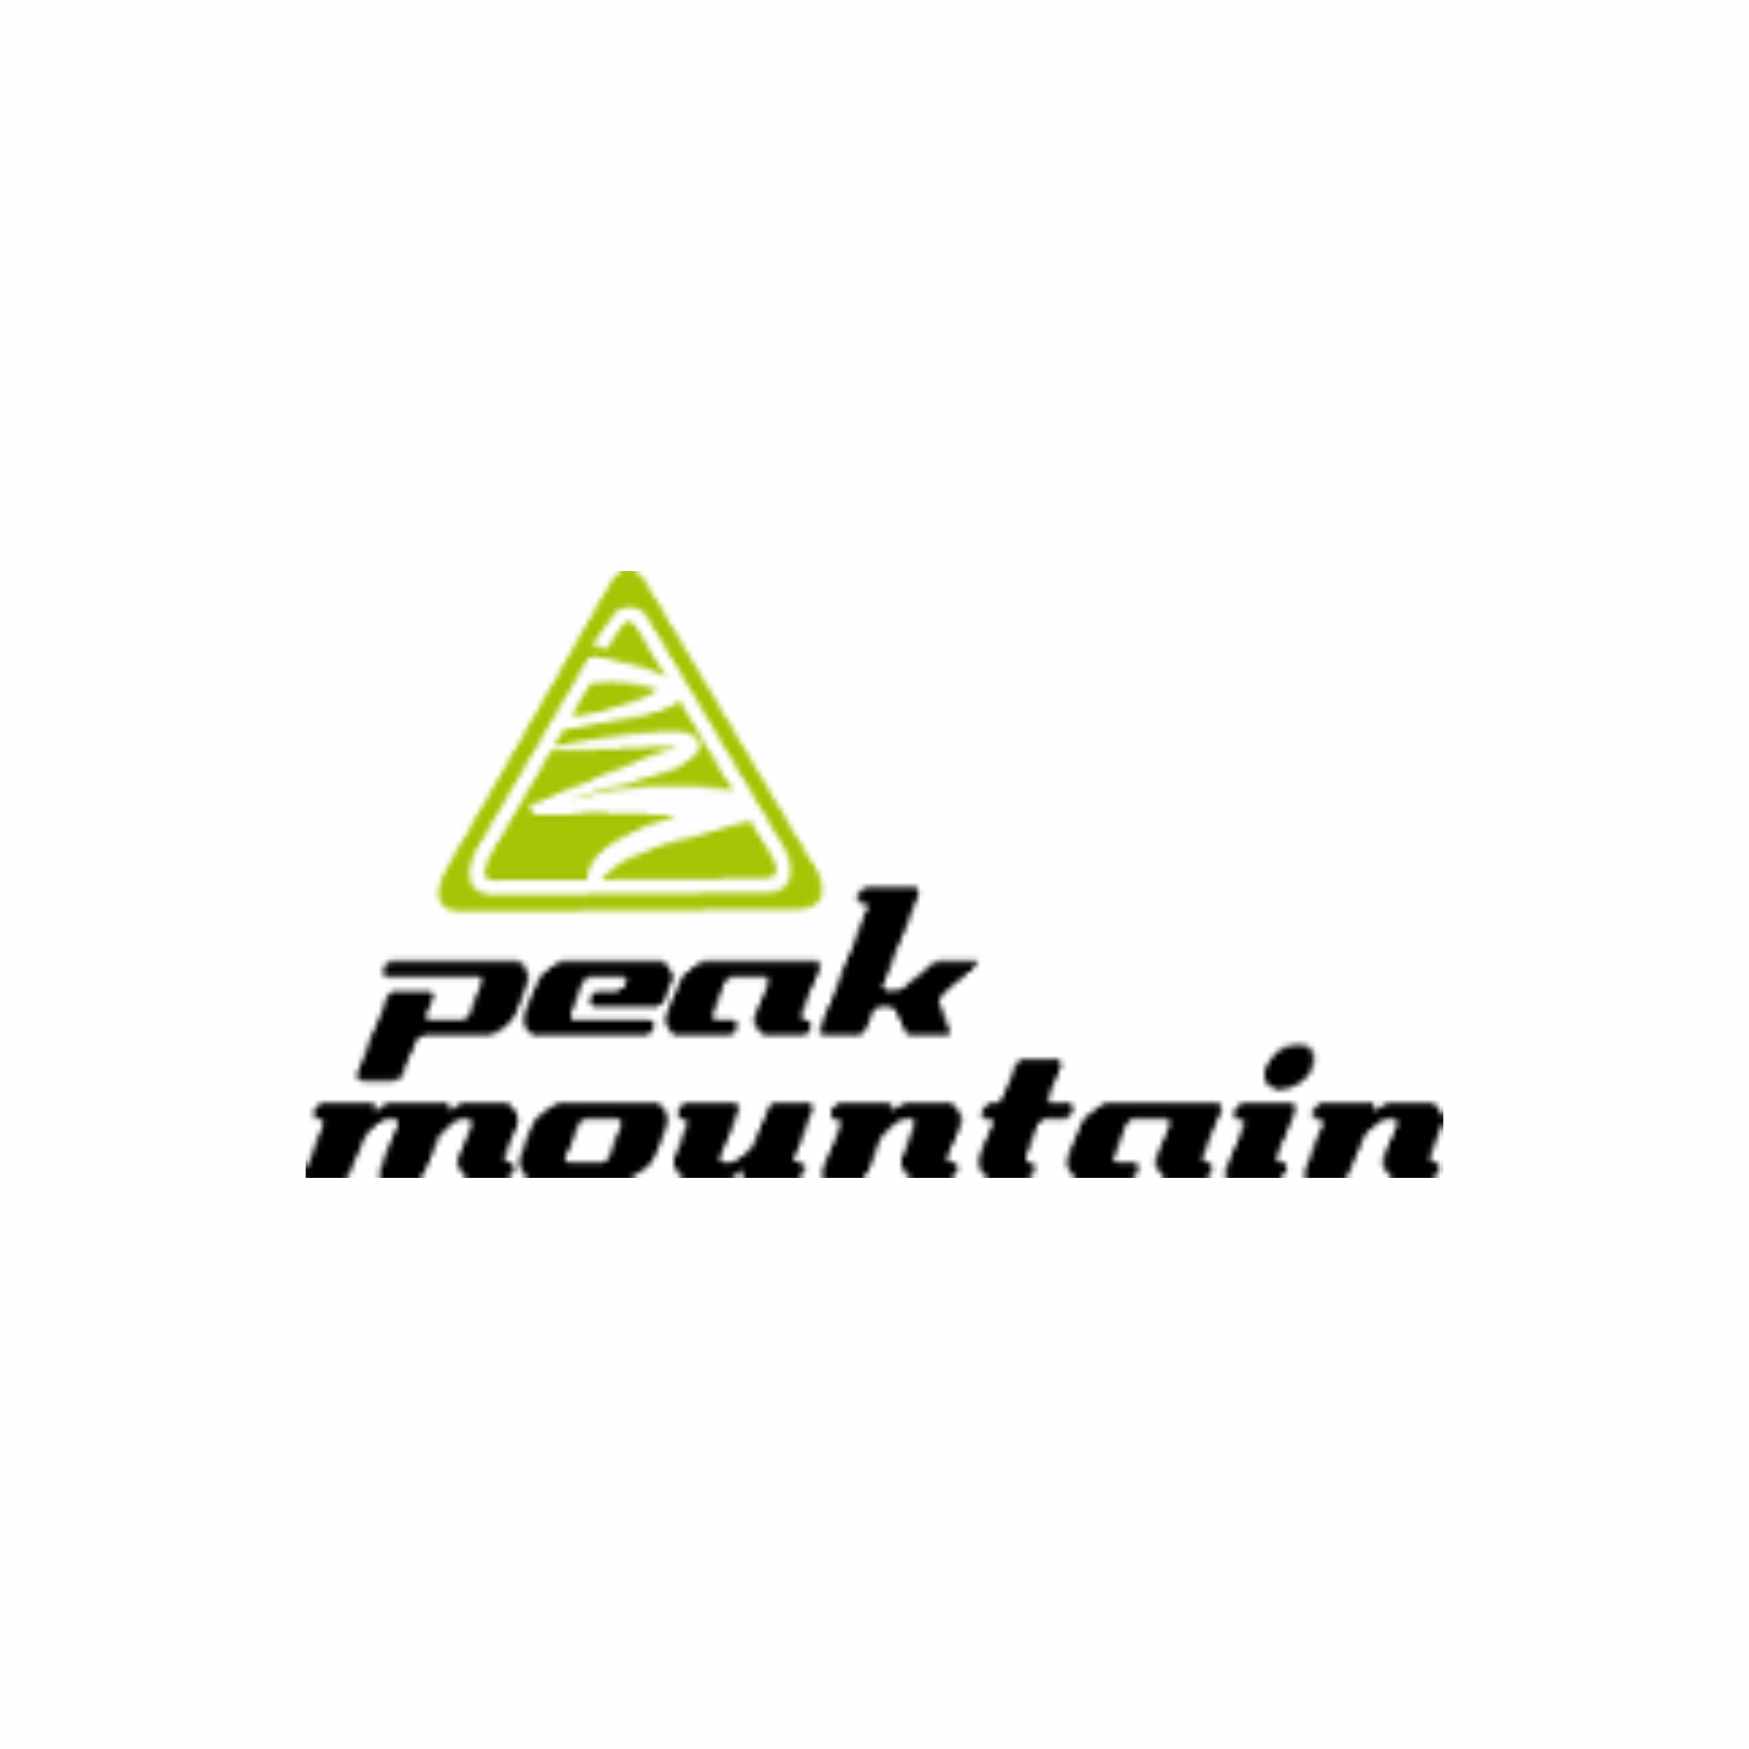 Peak Mountain